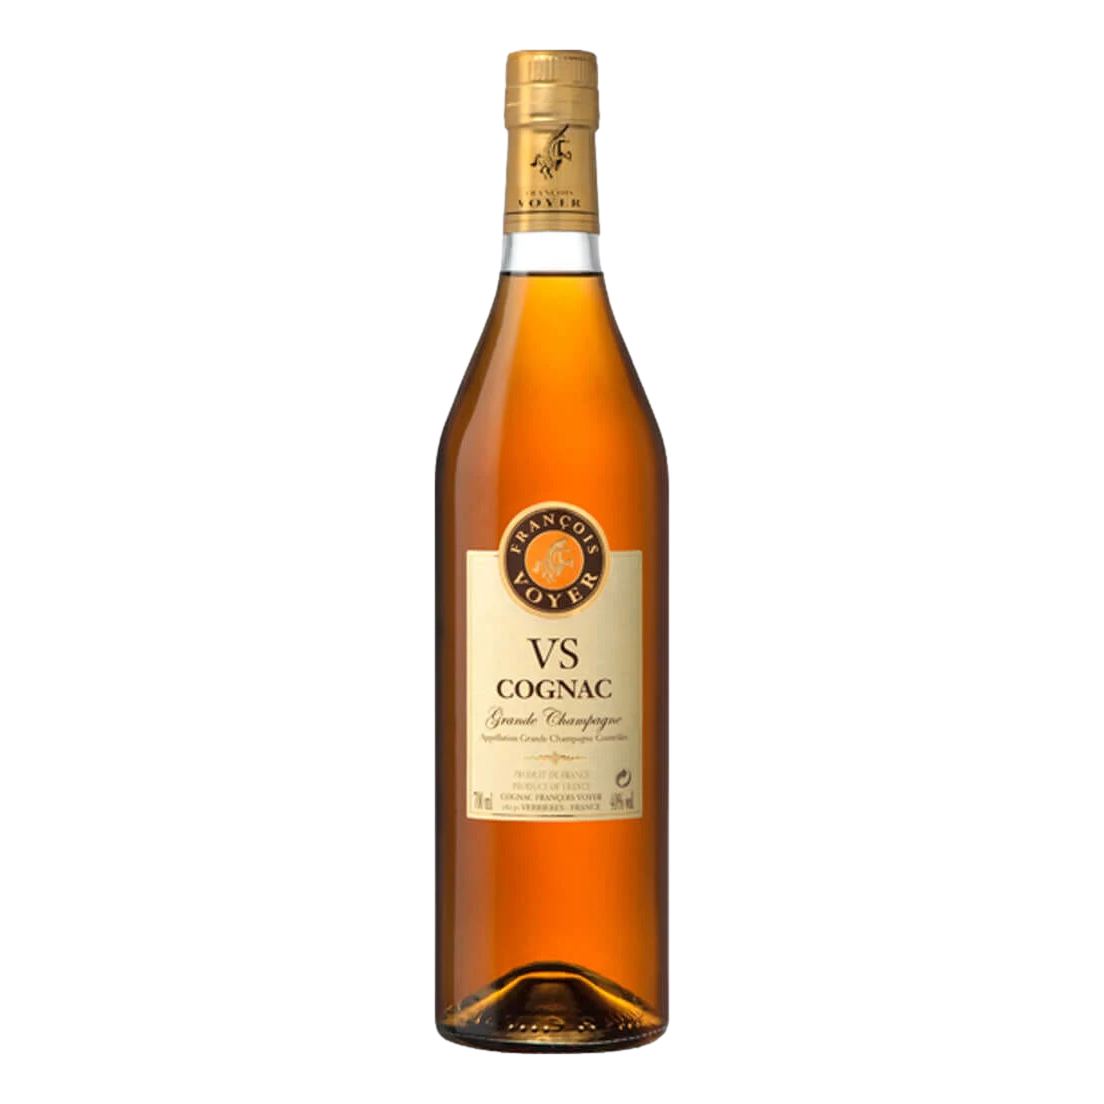 Francois Voyer Grande Champagne Cognac VS 700ml